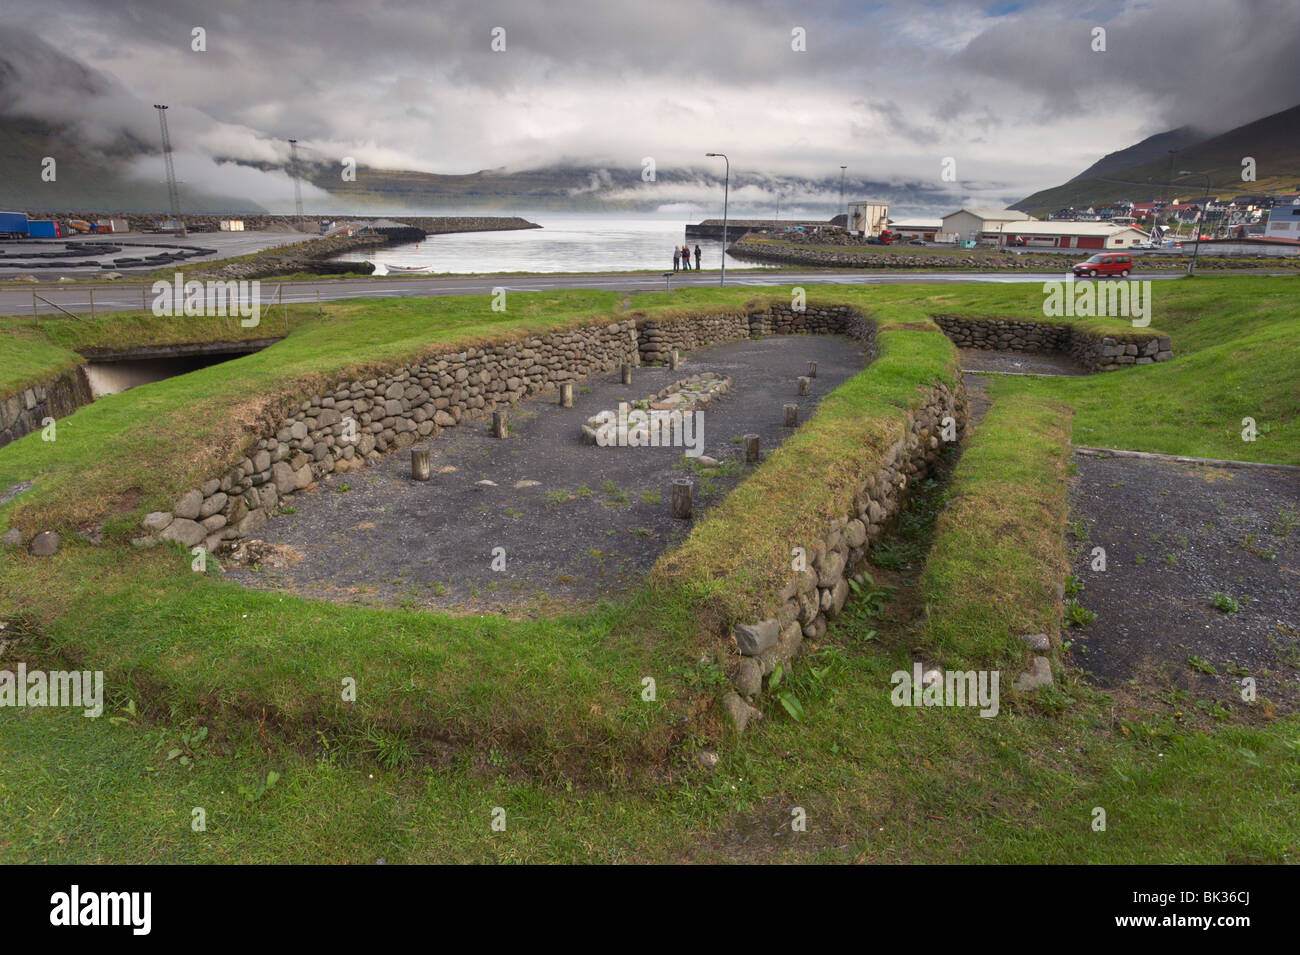 Wikinger-Langhaus aus dem 10. Jahrhundert, archäologische Stätte von Toftanes, Dorf Leirvik, Insel Eysturoy, Färöer Inseln Stockfoto